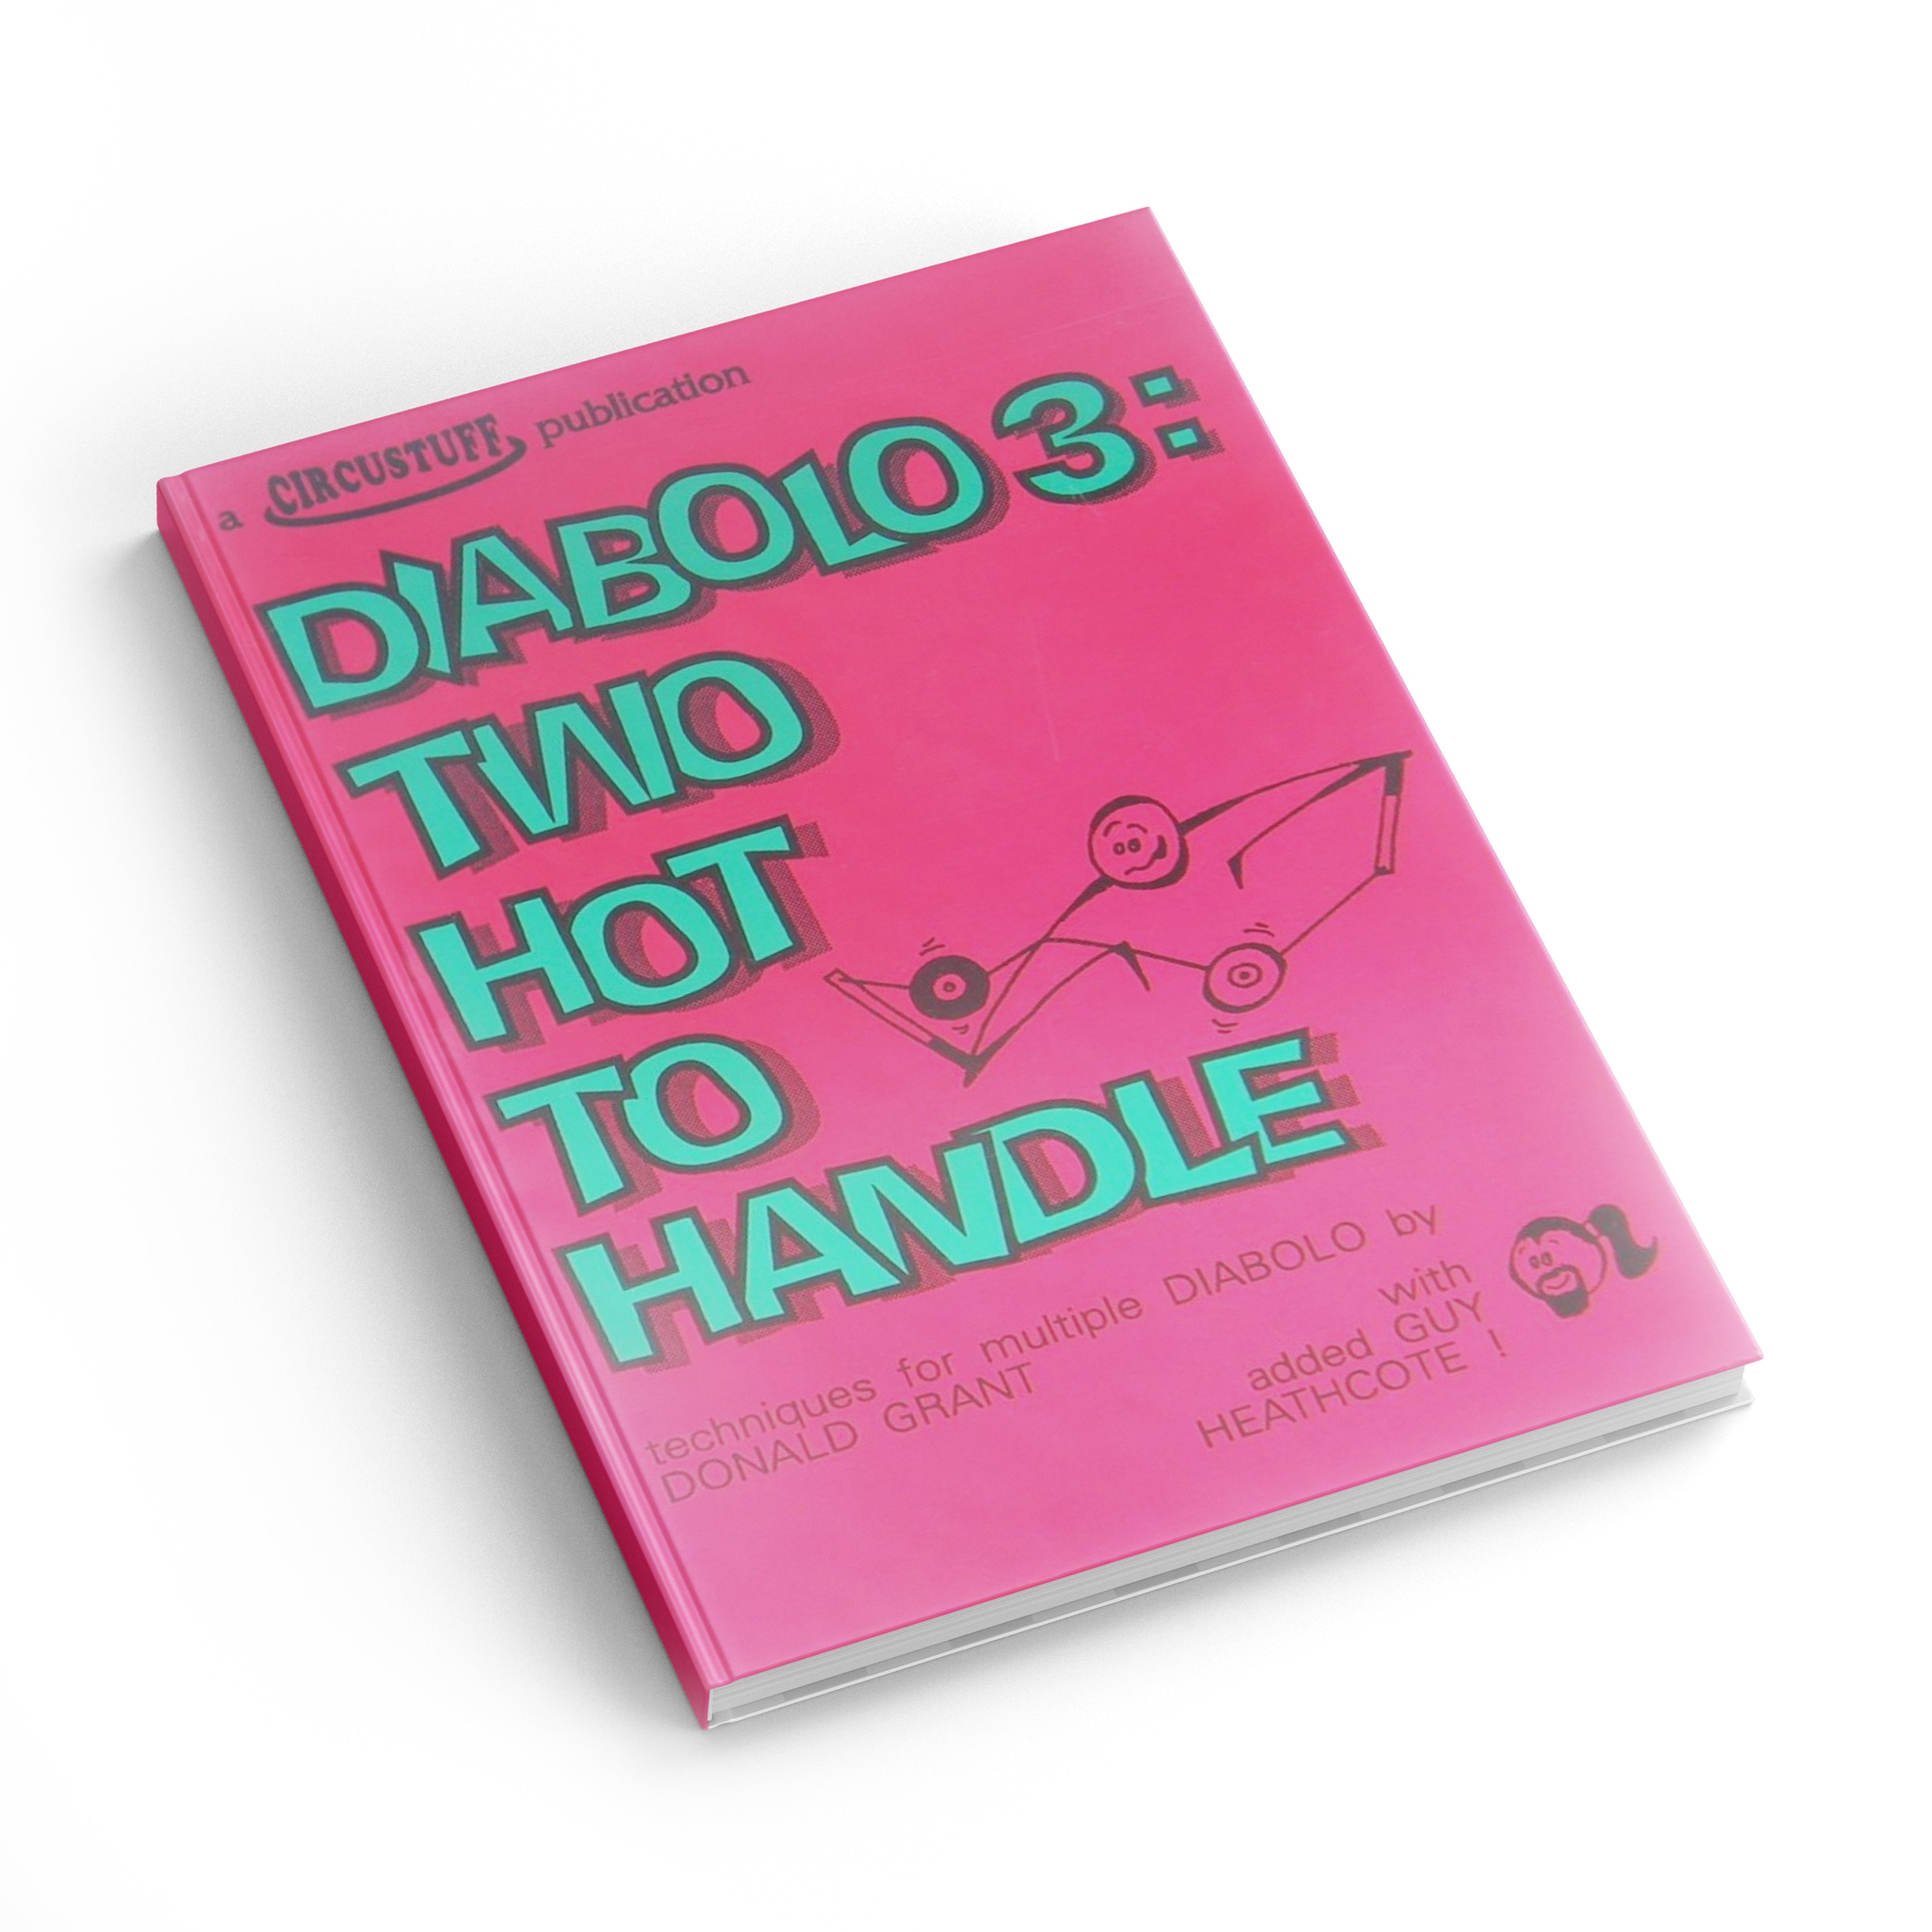 Diabolo 3, Two Hot to Handle (Diabolo Book)